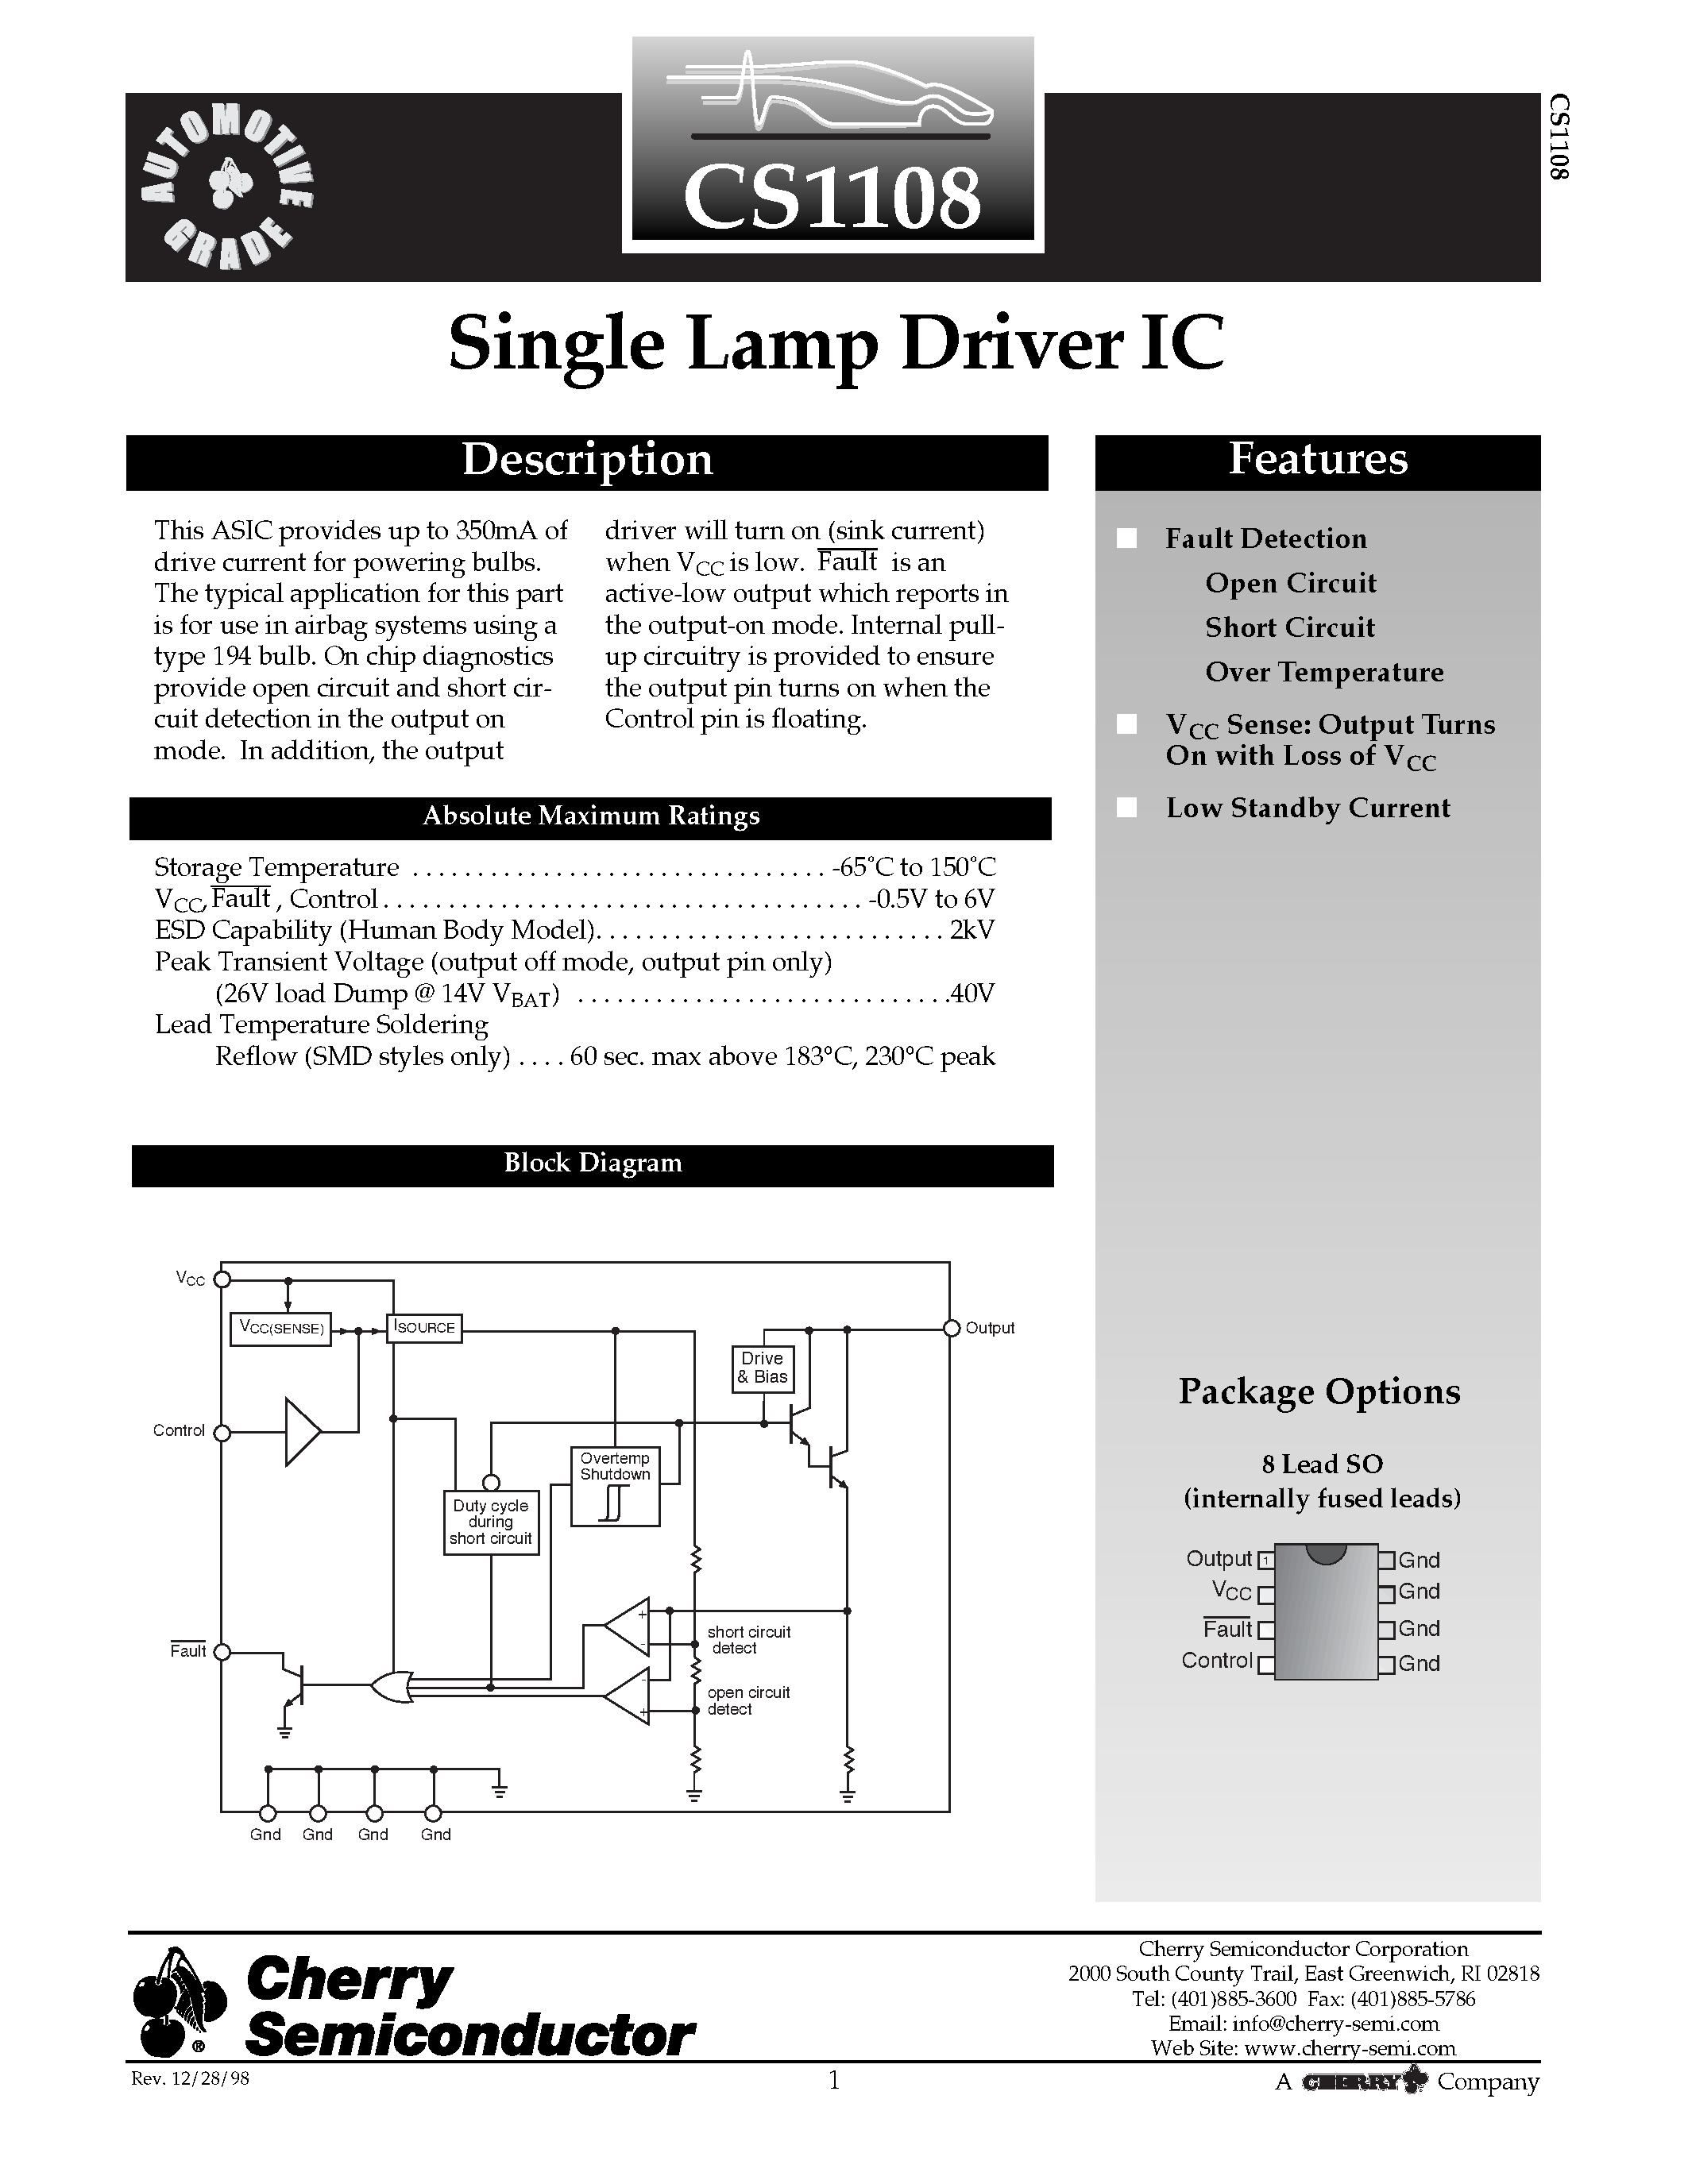 Даташит CS1108 - Single Lamp Driver IC страница 1